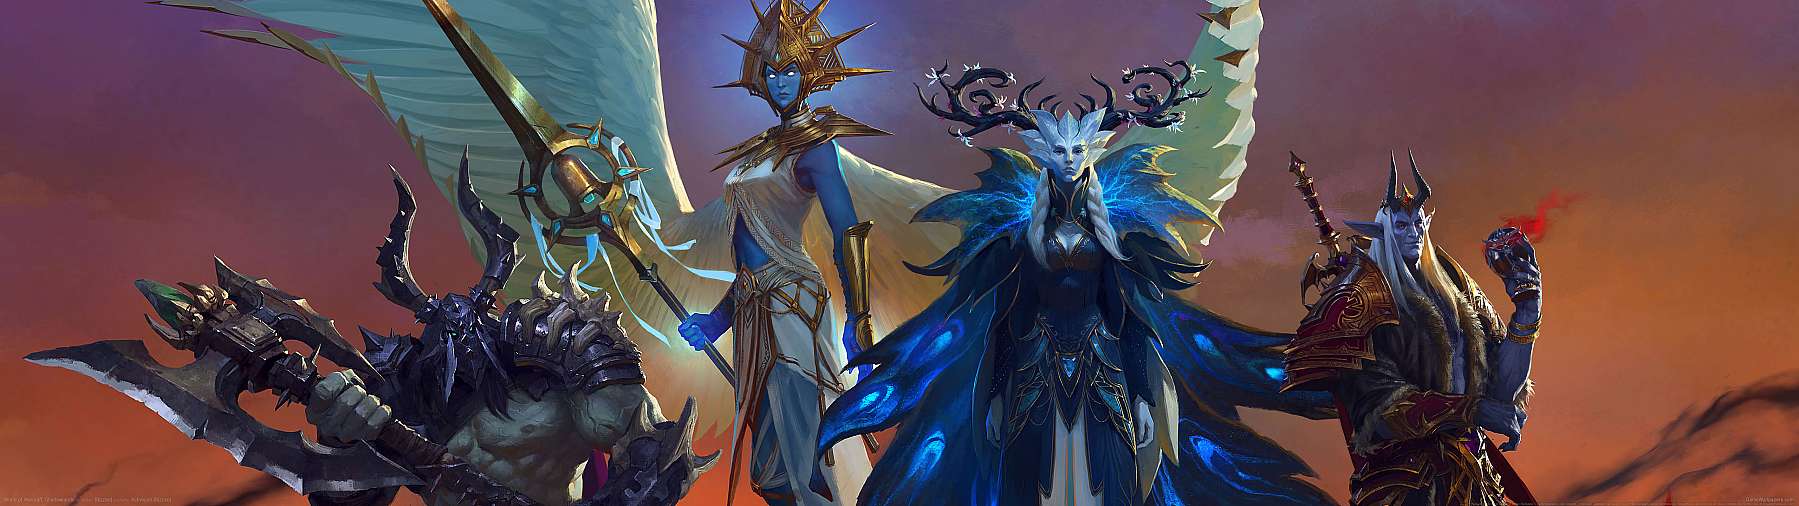 World of Warcraft: Shadowlands superwide fondo de escritorio 02